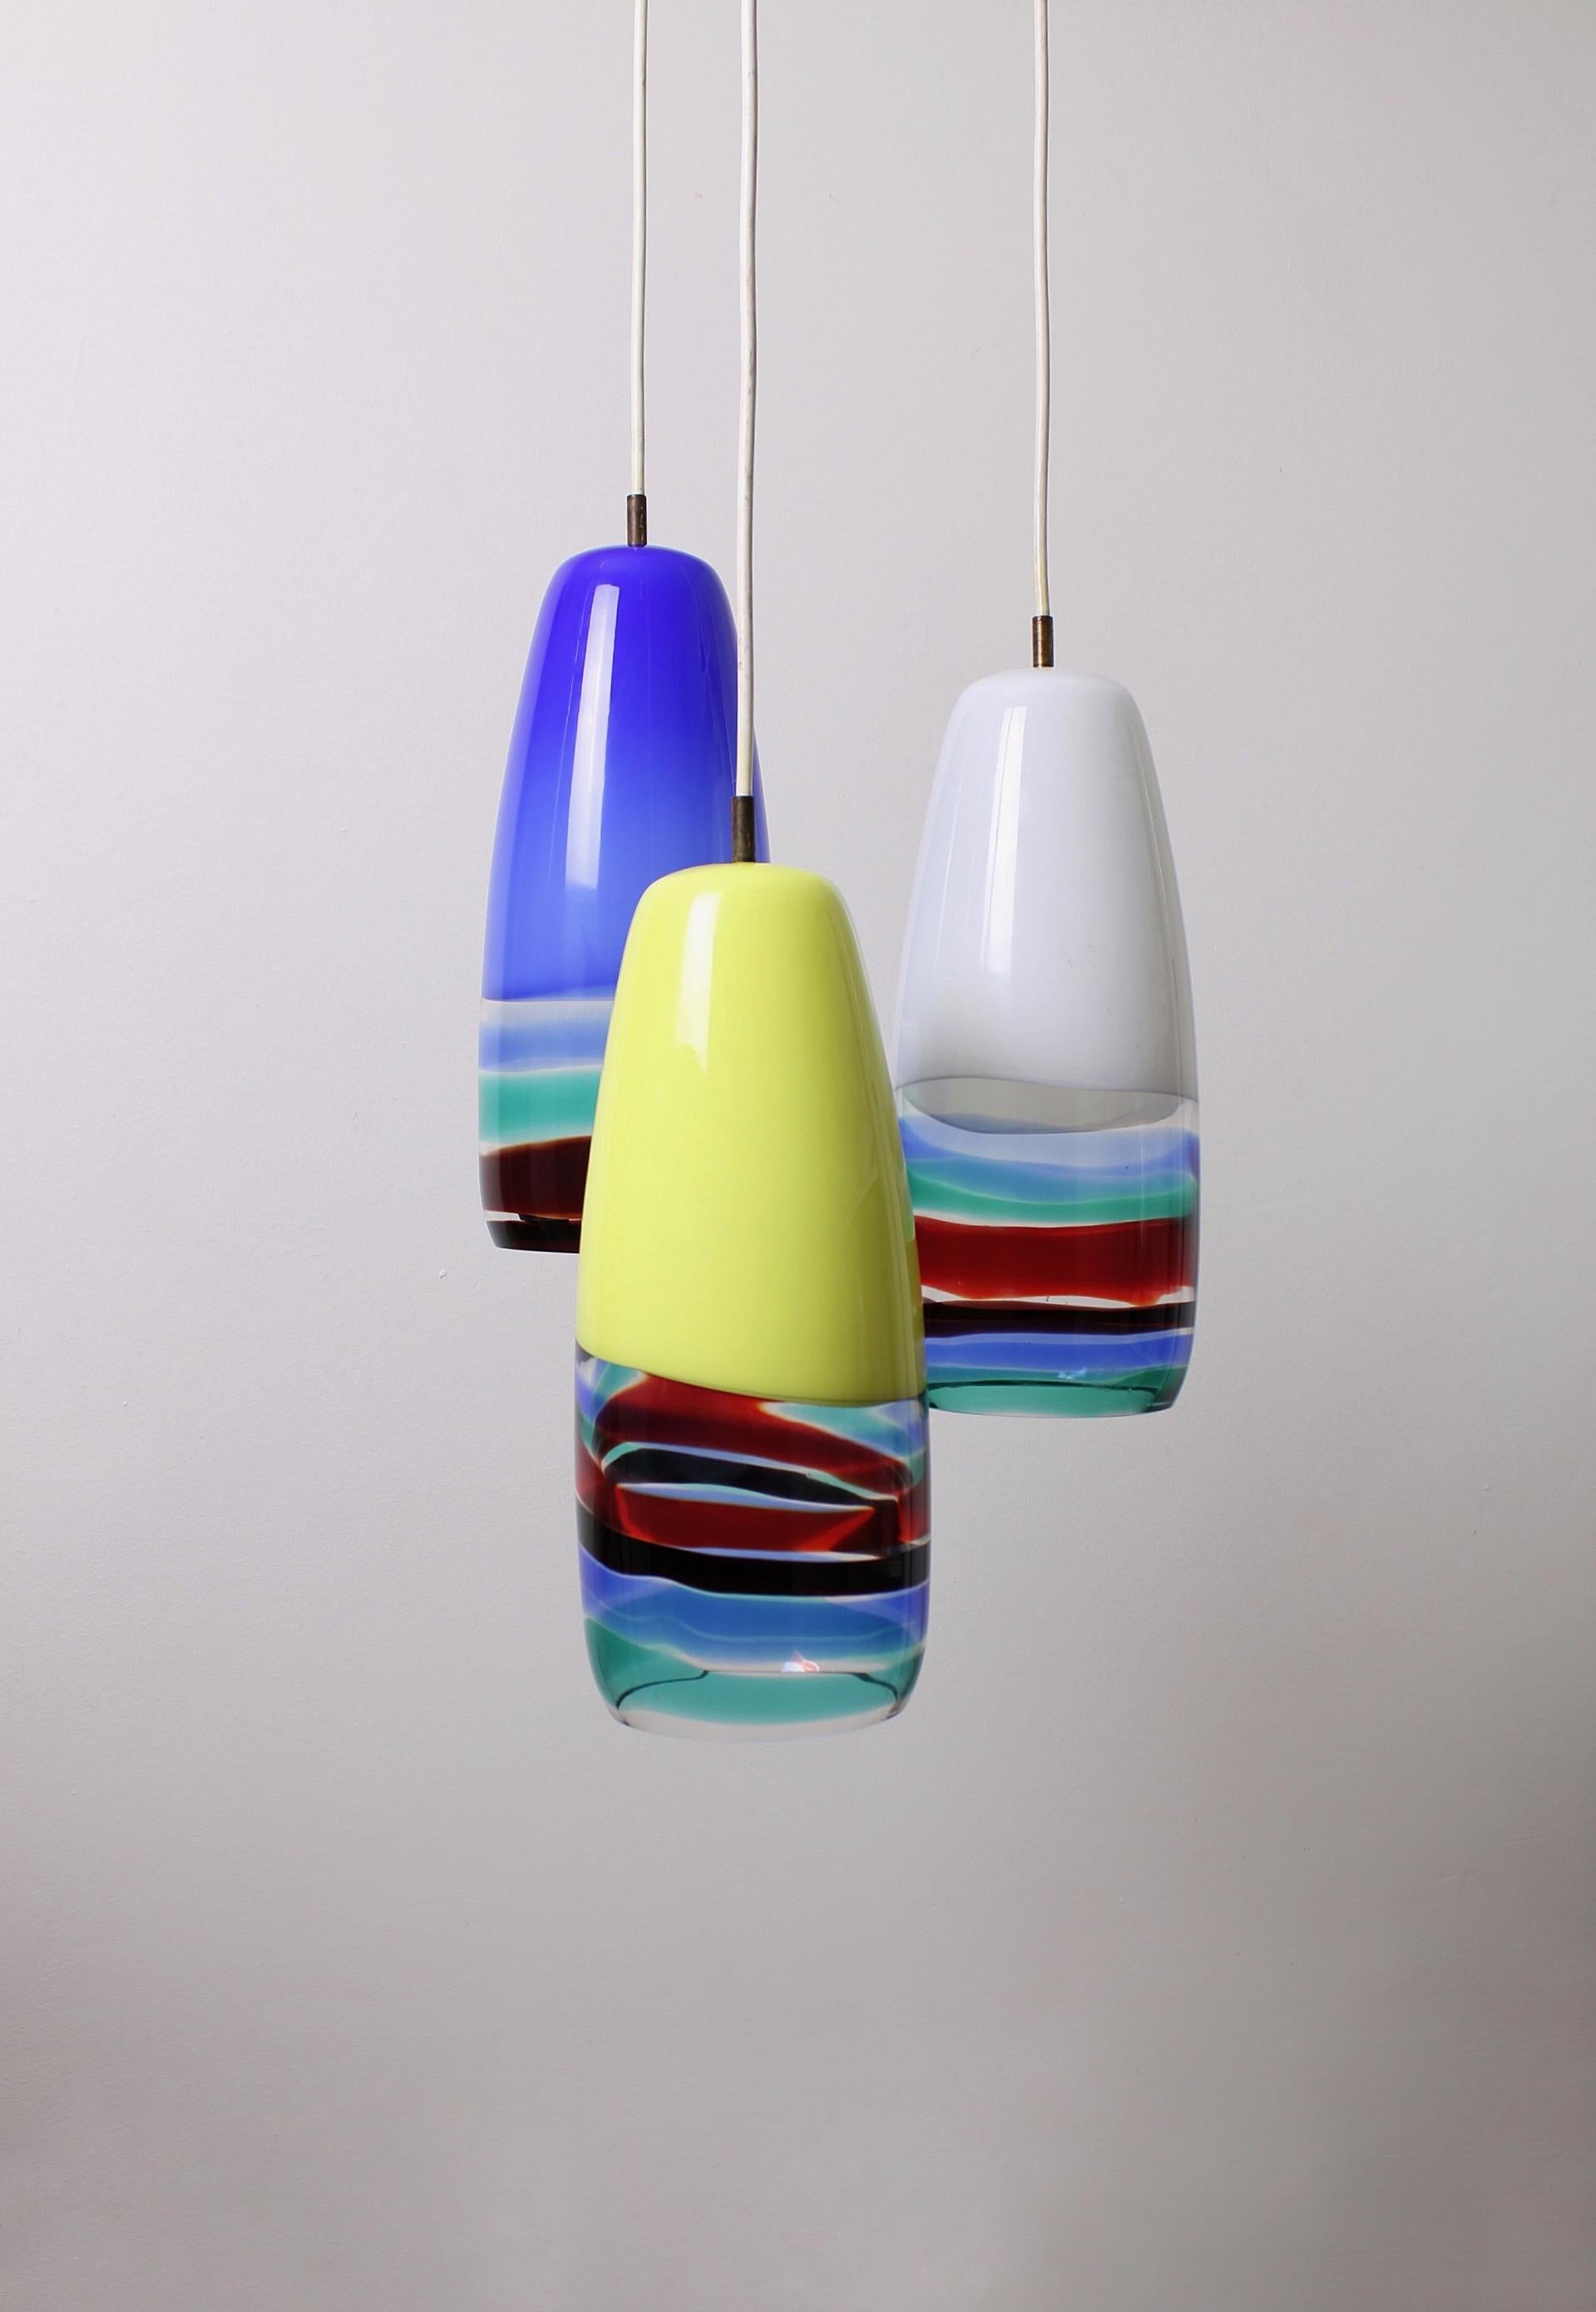 Ikonisches Set aus drei Sigaro-Pendelleuchten, die während der Collaboration zwischen Massimo Vignelli und Venini im Jahr 1956 entworfen wurden. Die Lampen sind aus Gitterglas mit mehrfarbigen Bändern an der Unterseite der Lampe hergestellt.